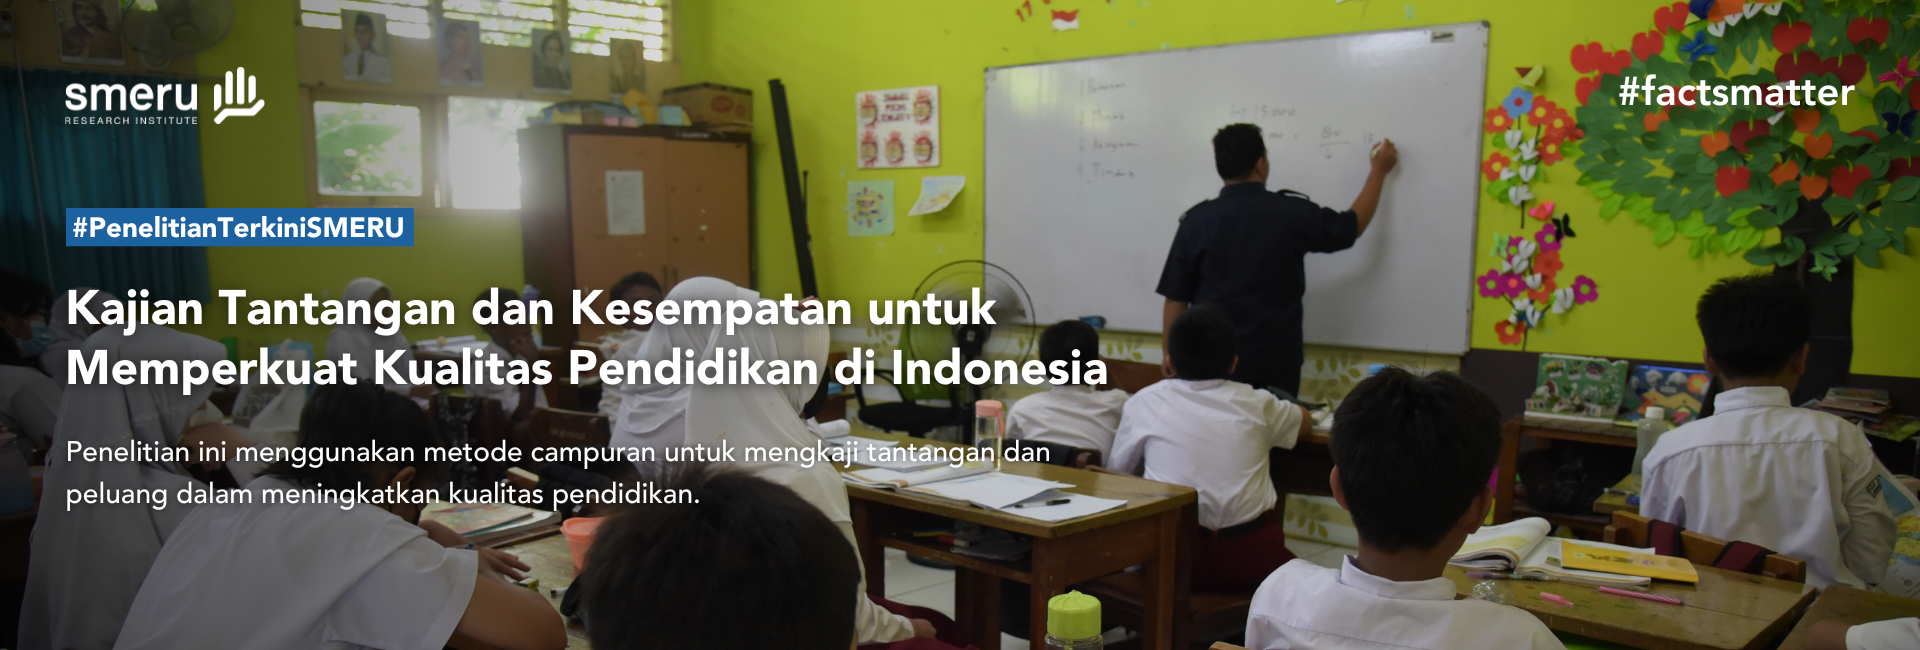 Kajian Tantangan dan Kesempatan untuk Memperkuat Kualitas Pendidikan di Indonesia